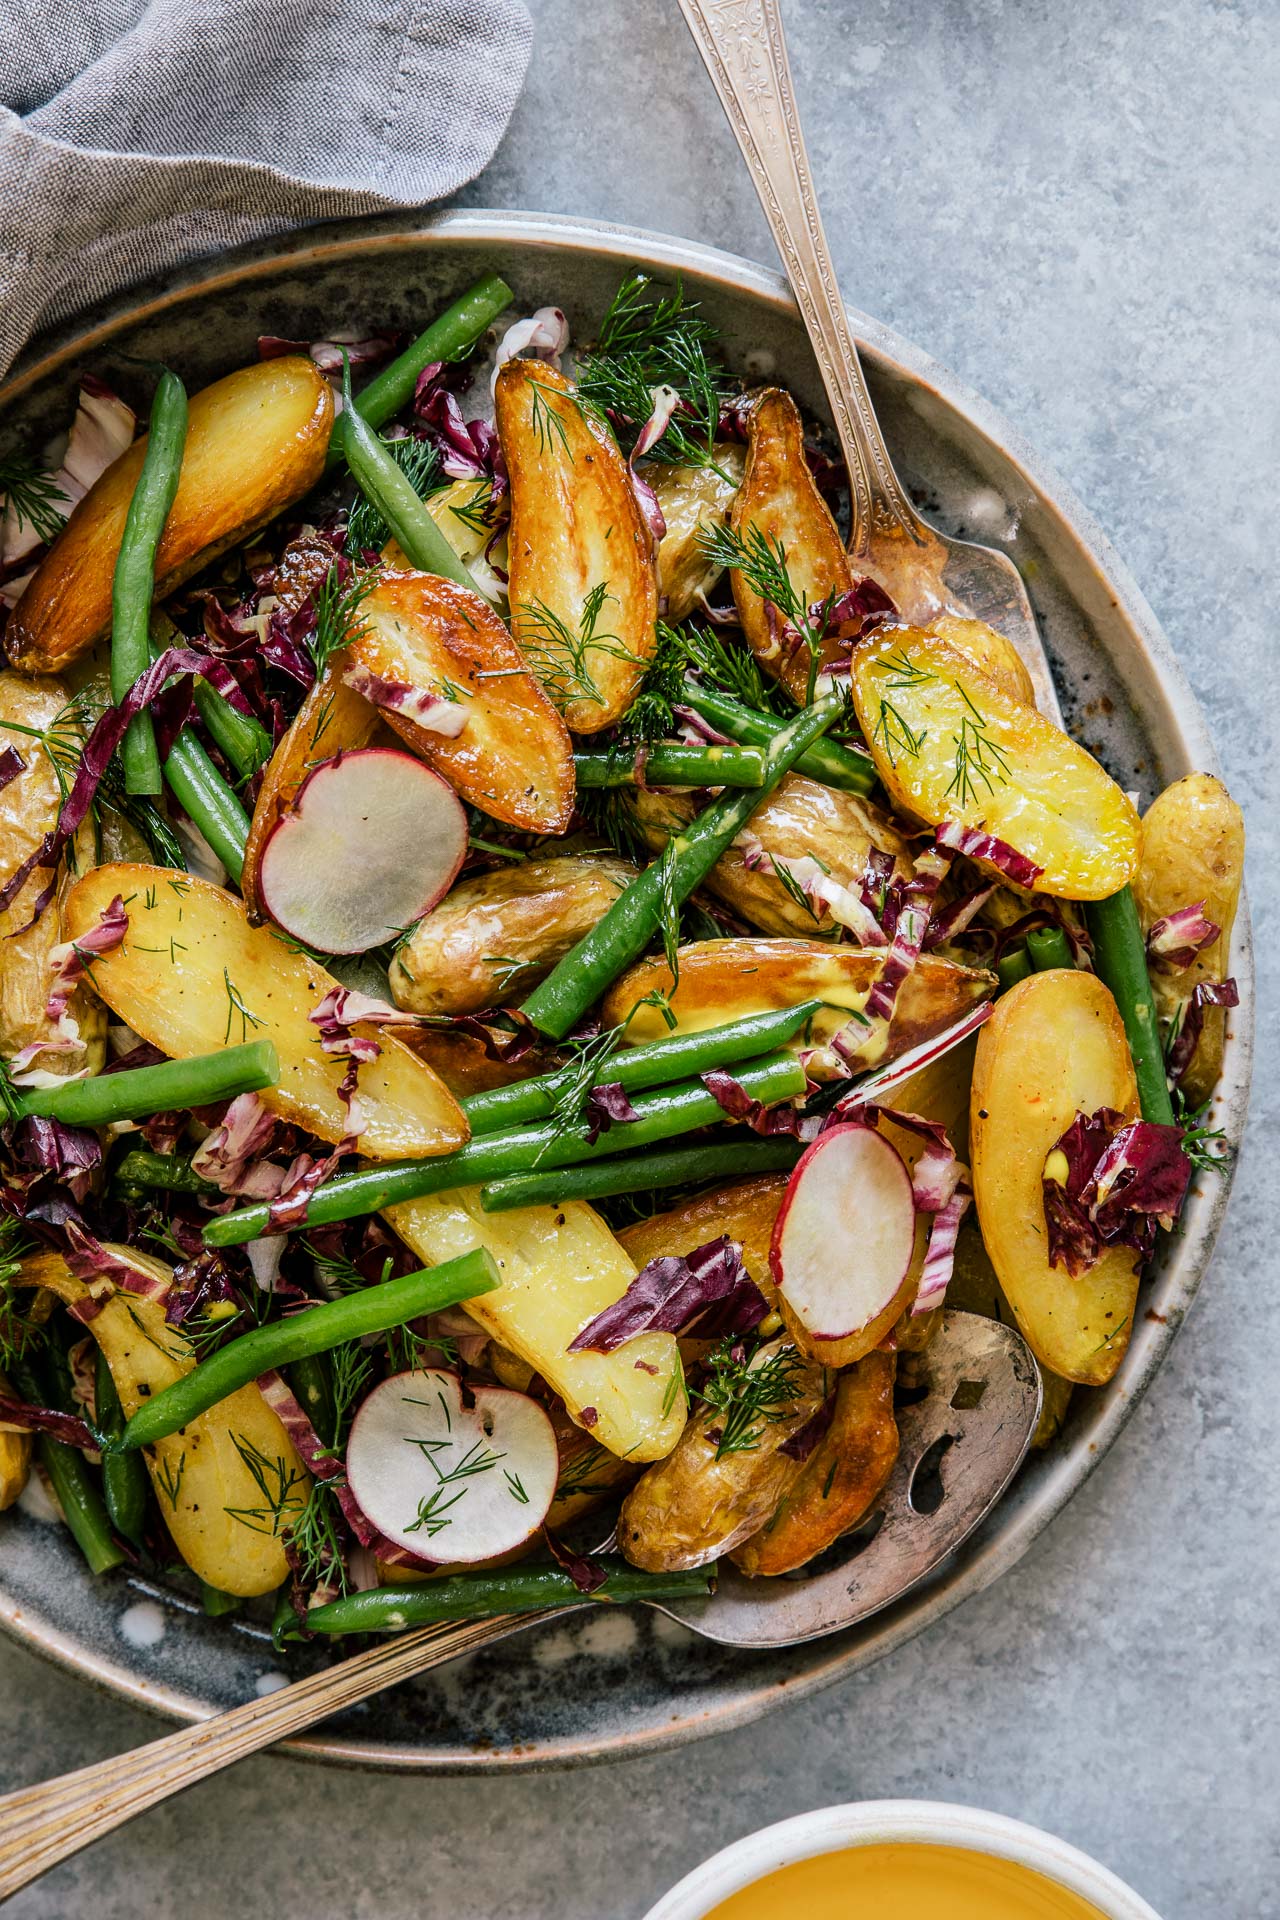 Potato Salad w/ Saffron Aioli | HonestlyYUM (honestlyyum.com) #recipes #salads #picnics #veggies #saladdressing